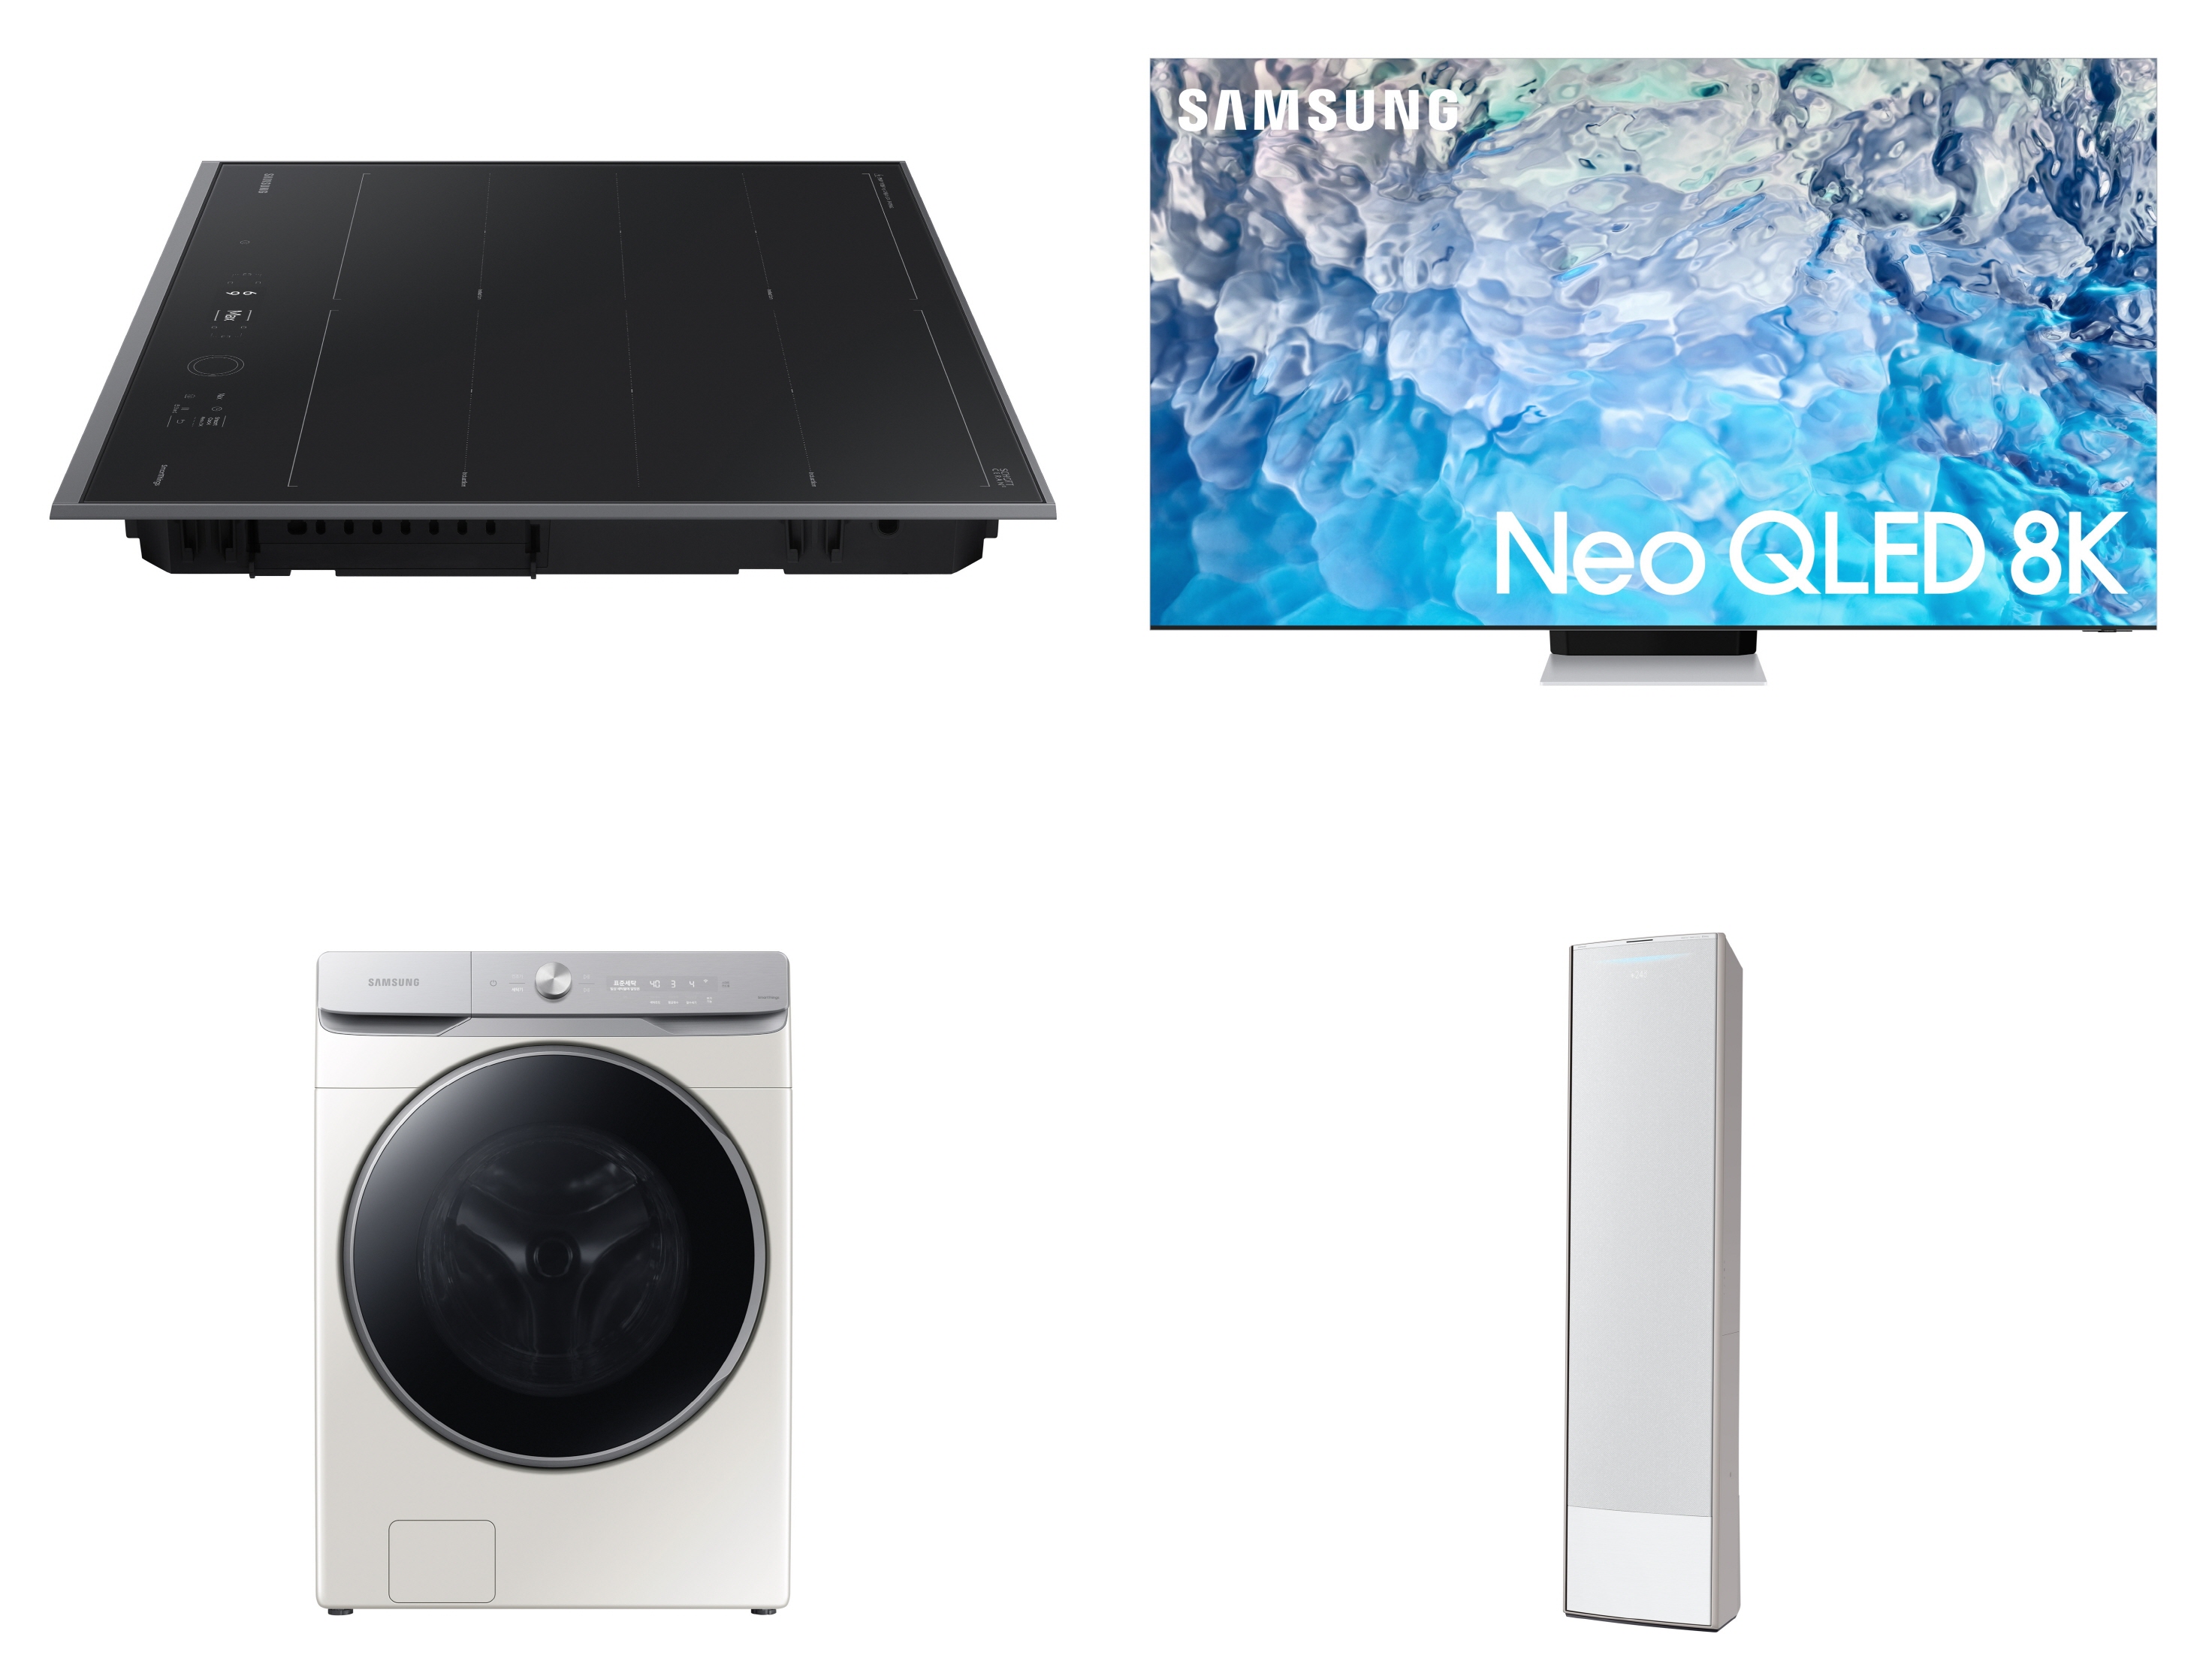 ‘제25회 올해의 에너지위너상’에서 수상한 삼성전자 주요 제품들. (사진 윗줄 왼쪽부터 시계 방향으로)비스포크 인덕션 인피니트 라인, Neo QLED 8K TV, 비스포크 무풍에어컨 갤러리, 비스포크 그랑데 AI 세탁기. 삼성전자 제공